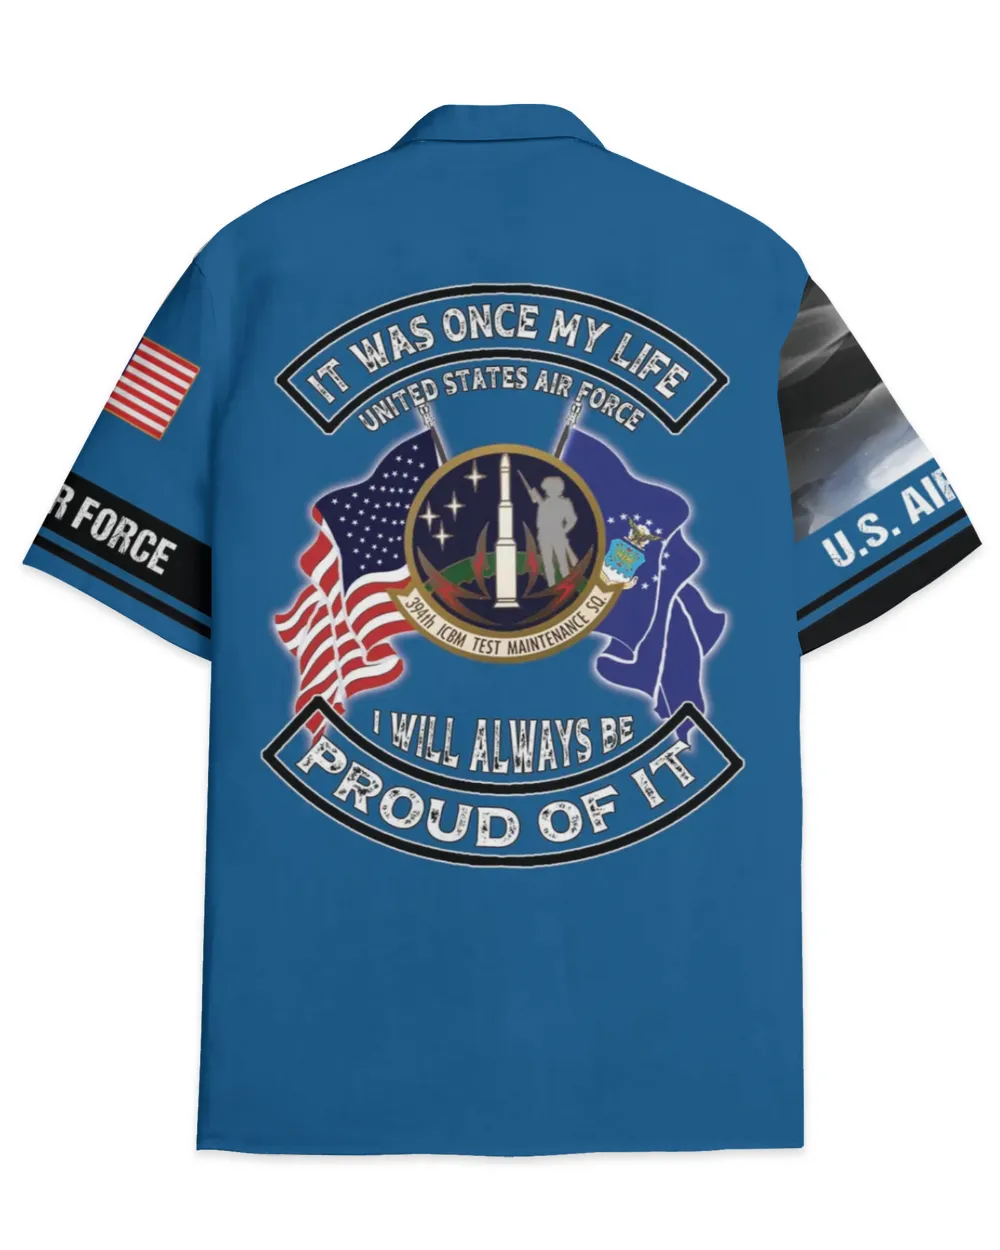 394th ICBM Test Maintenance Squadron US Flag Hawaiian Shirt